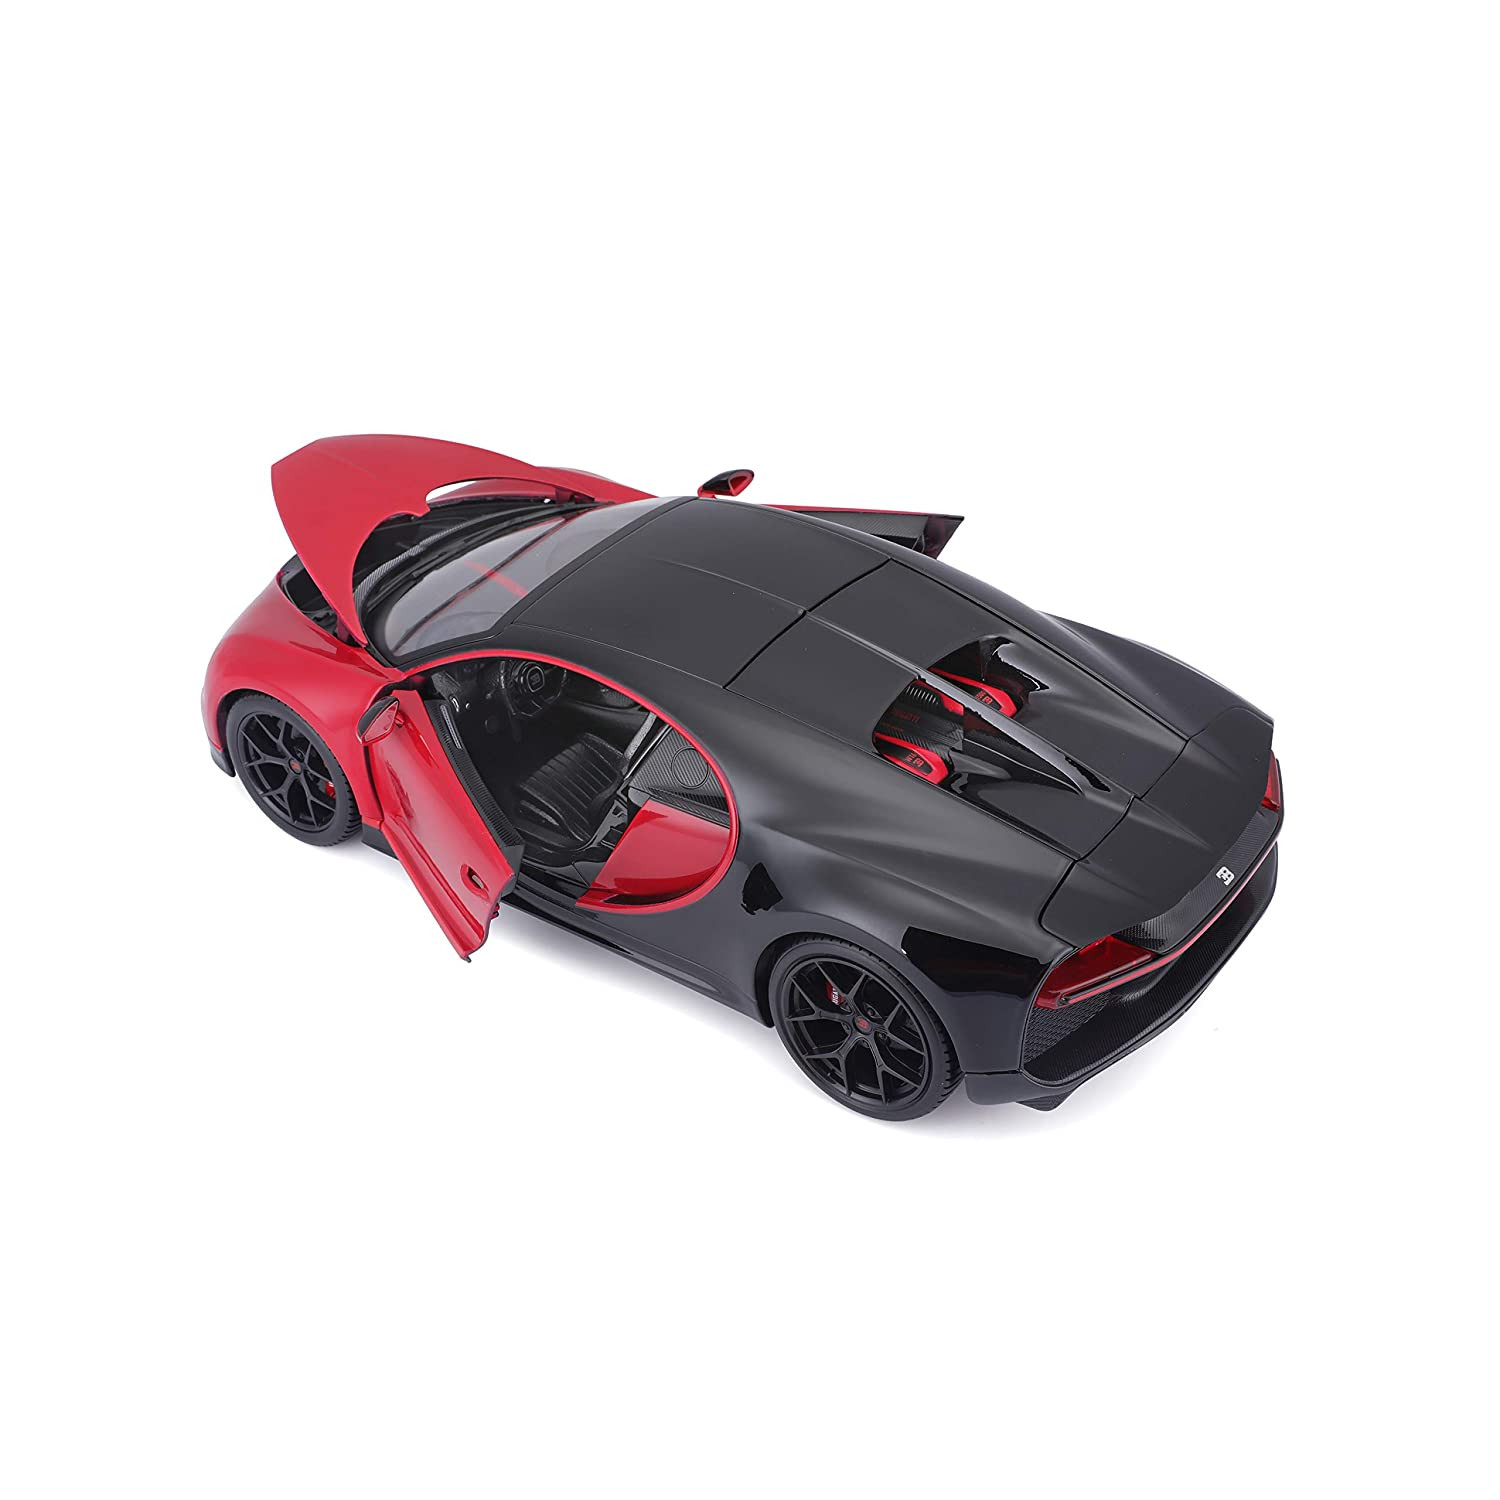 Bburago 1:18 2019 Bugatti Chiron Sport - Black/Red